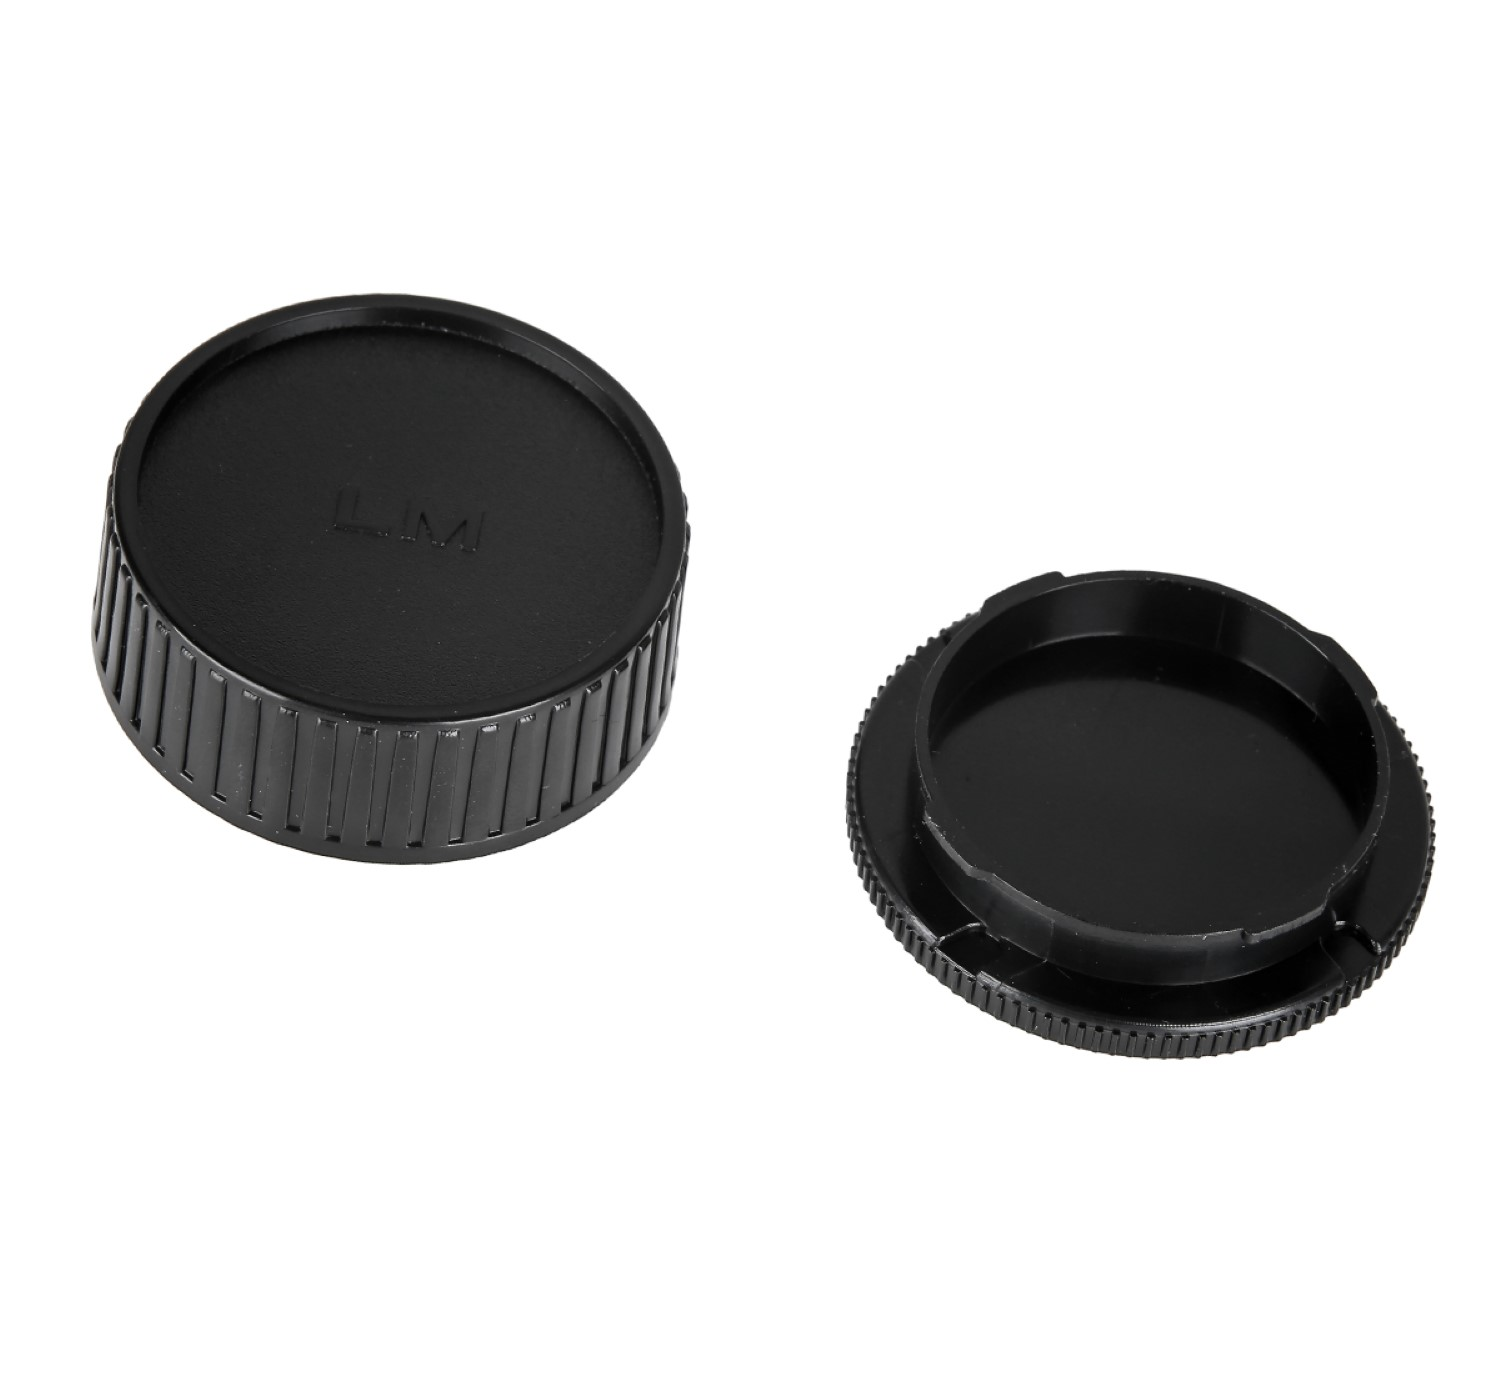 AYEX Gehäusedeckel M für Body Leica Black, + passend Objektivdeckel, Gehäusedeckel